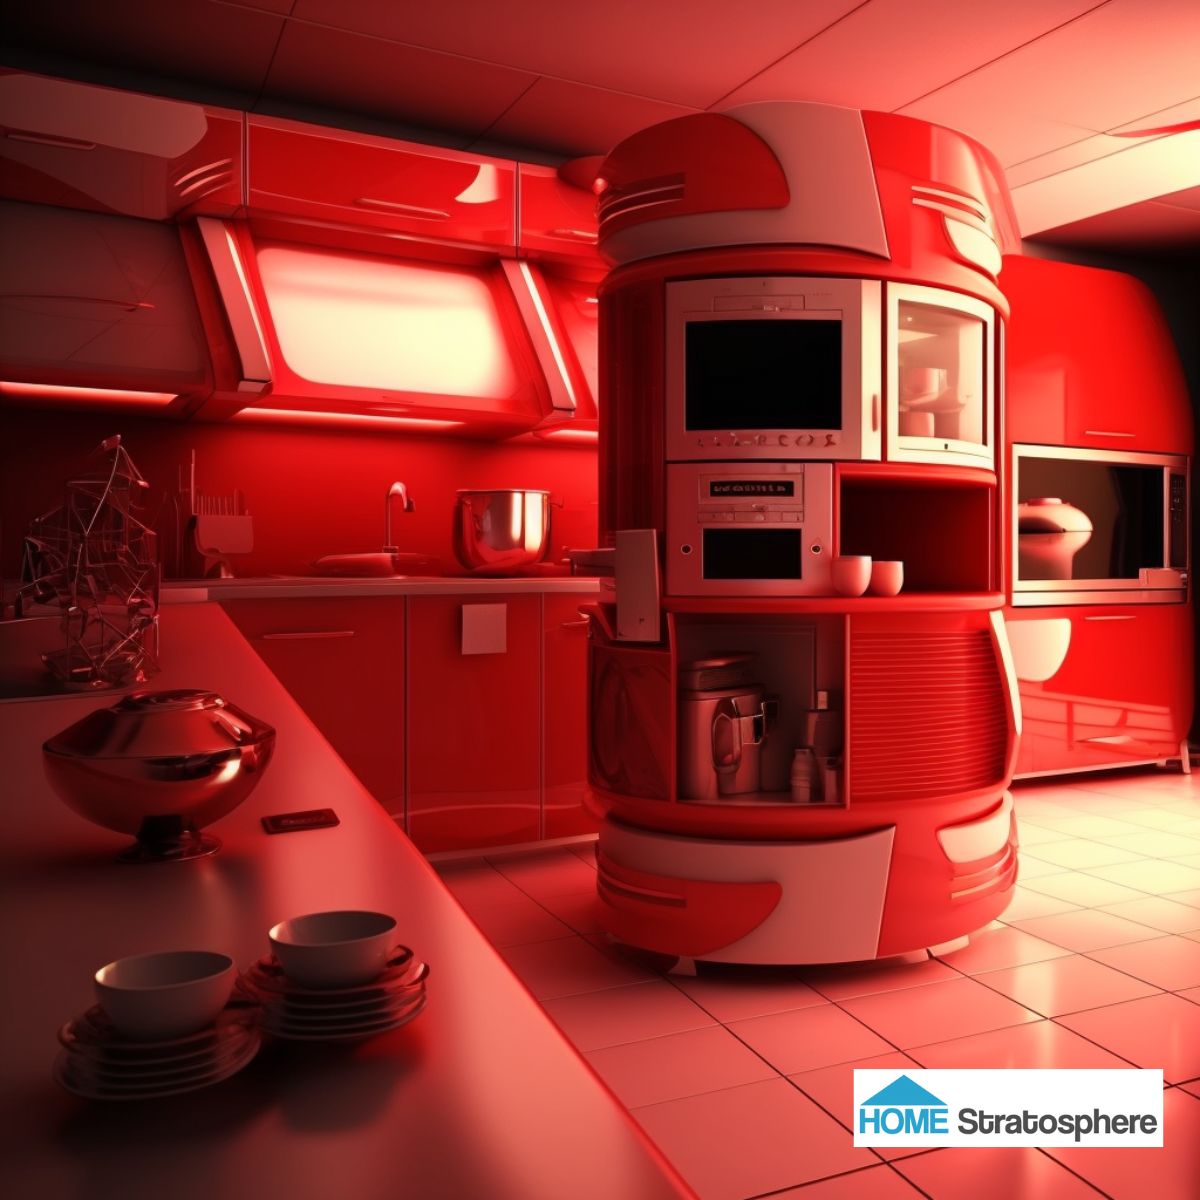 每个表面都覆盖着一种闪闪发光的红色，就像科幻小说中某个皇帝的侍卫一样。机器人厨房岛布满了各种小工具和存储空间。虽然红色变得强烈，布局受到AI扭曲的影响，但我觉得在这个厨房做饭会很有趣。